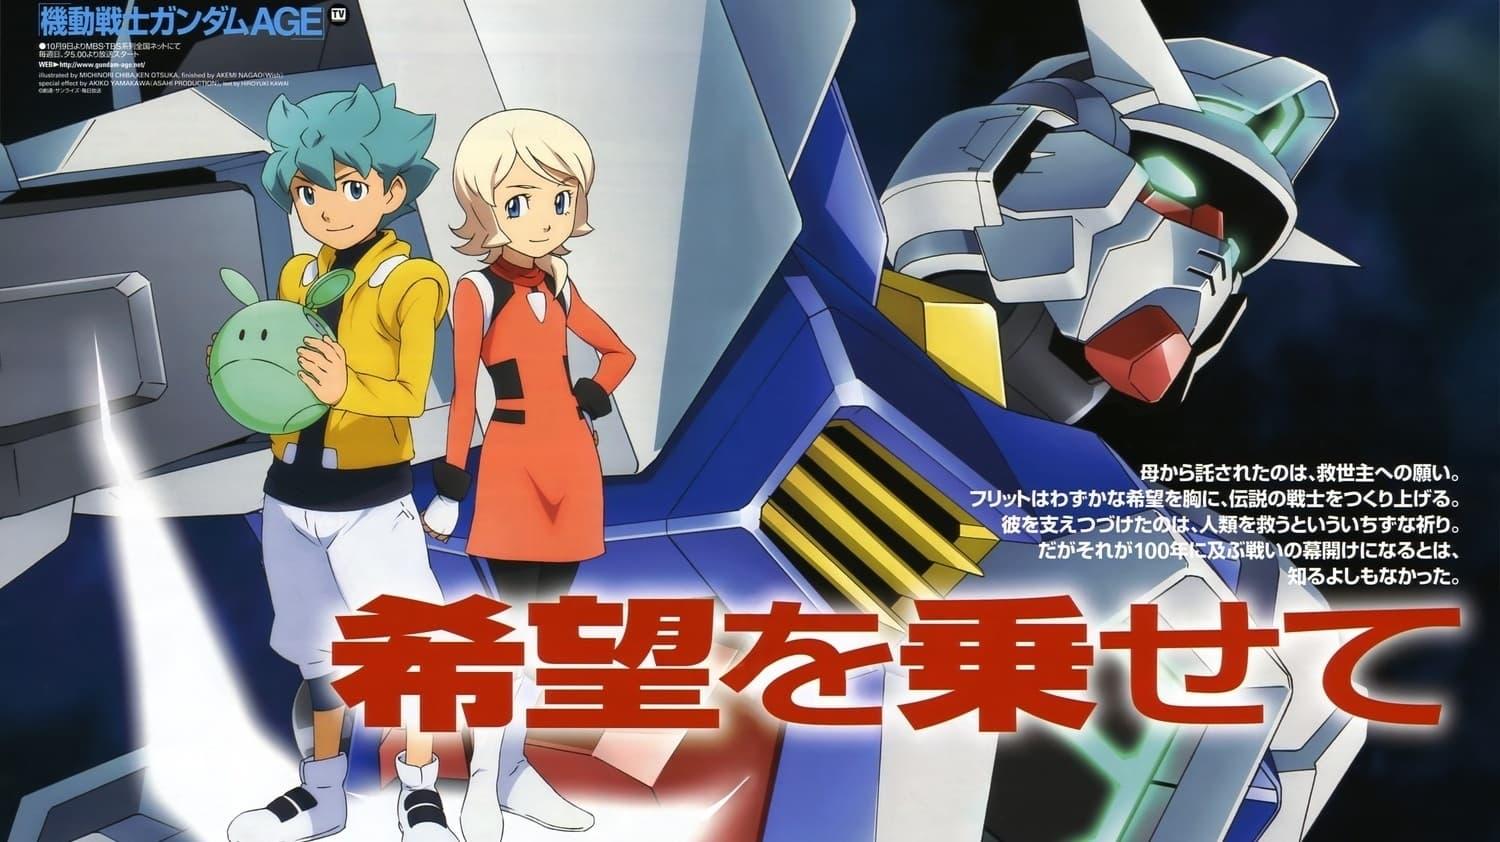 Mobile Suit Gundam AGE backdrop